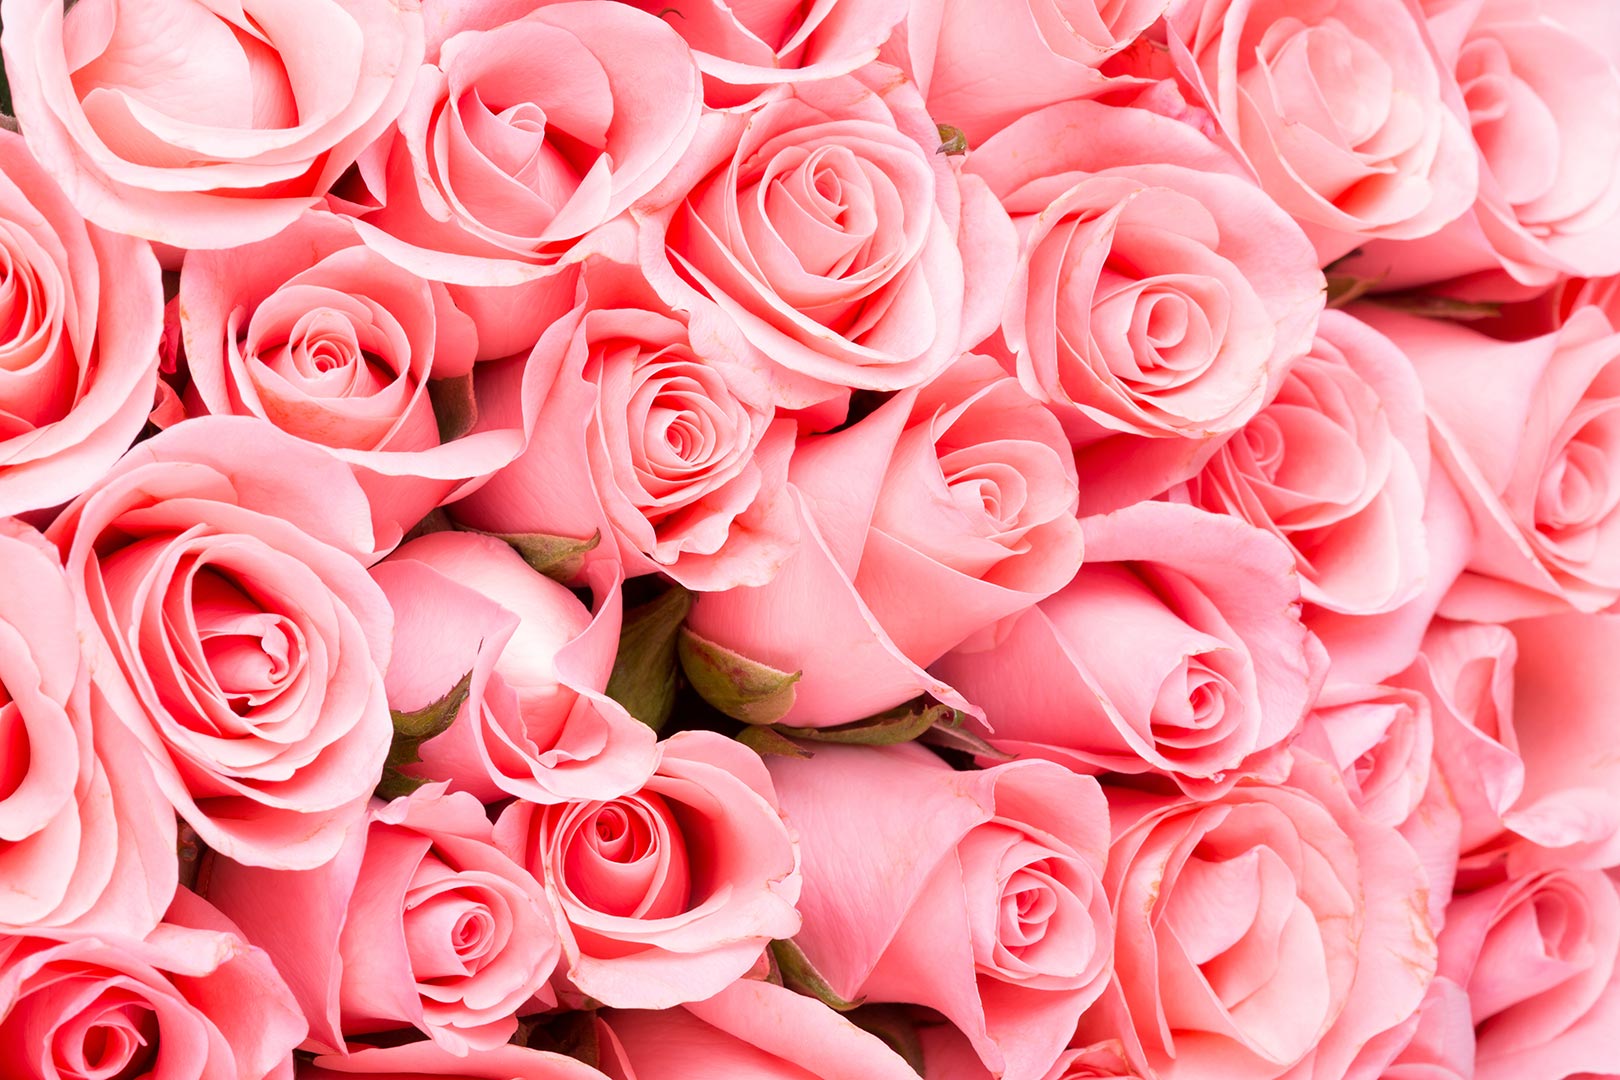 tapete roz,gartenrosen,blume,rose,rosa,blütenblatt